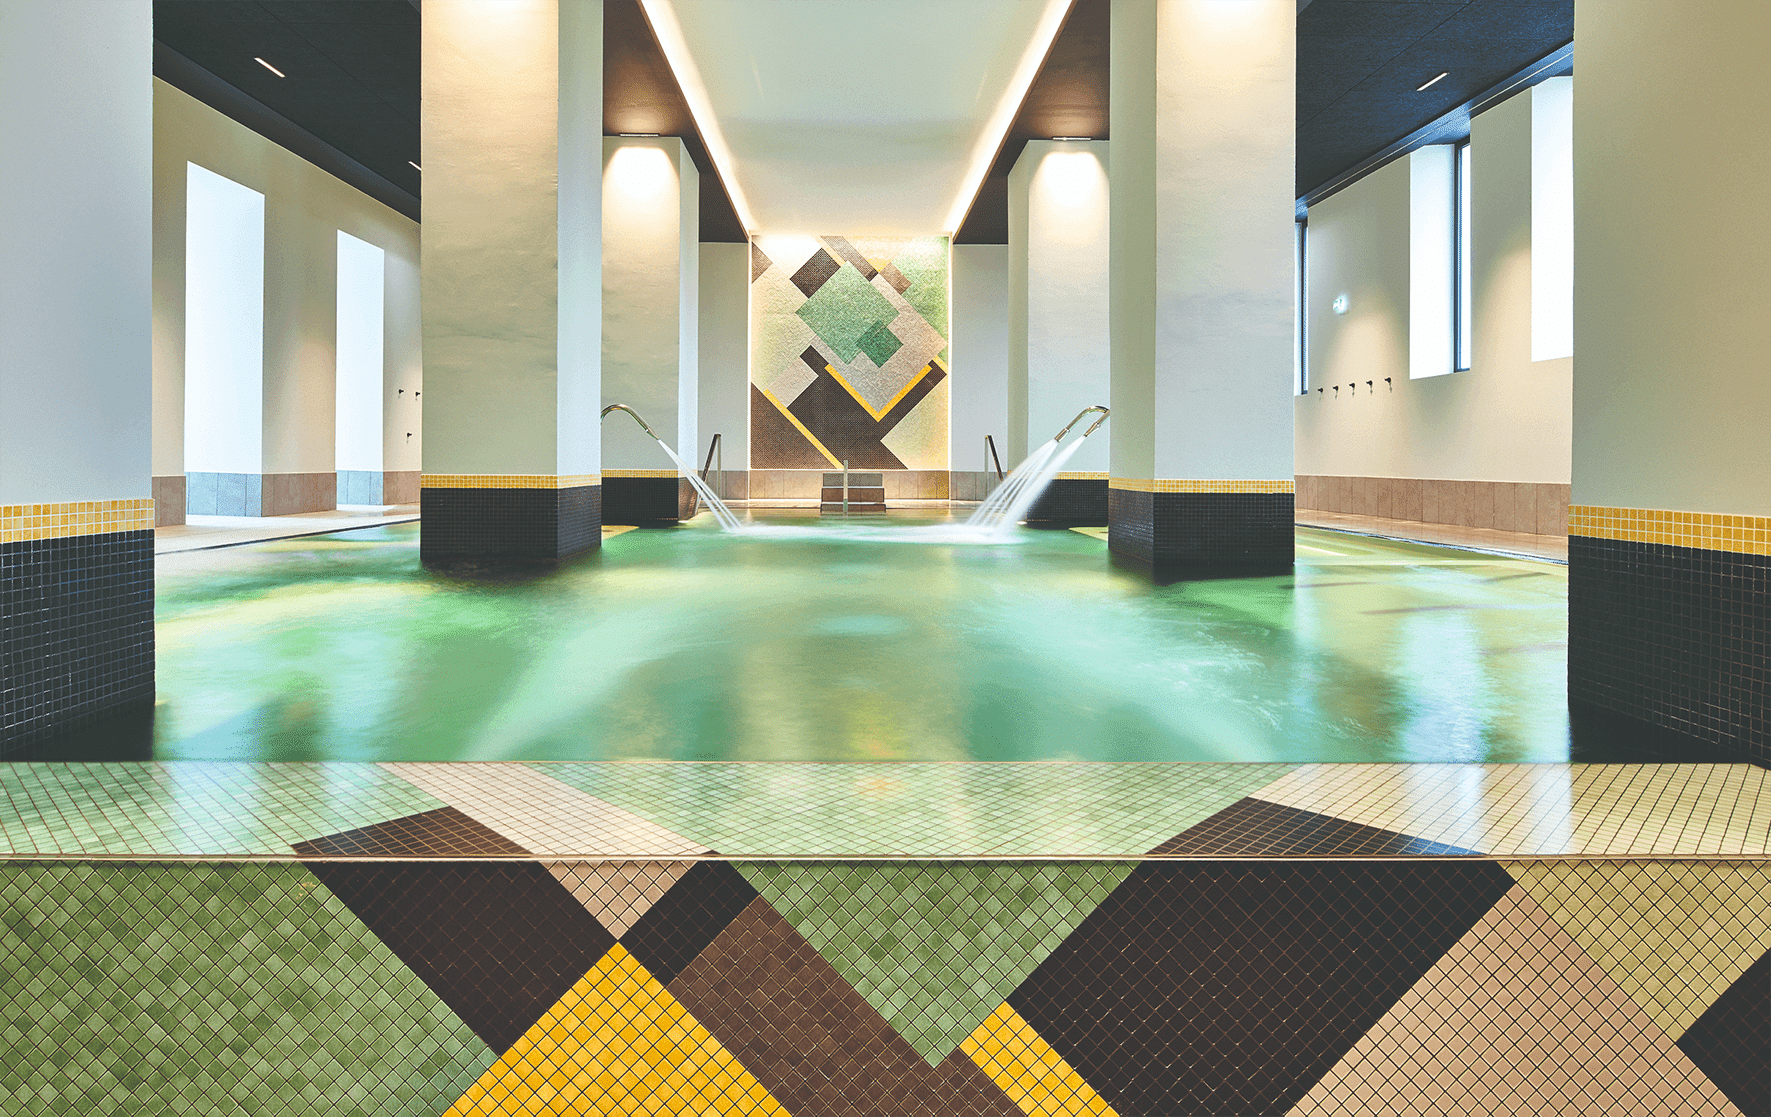 Ce sublime palace Art déco vous propose un moment de détente au spa de l'hôtel lors de vos séminaire d'entreprise